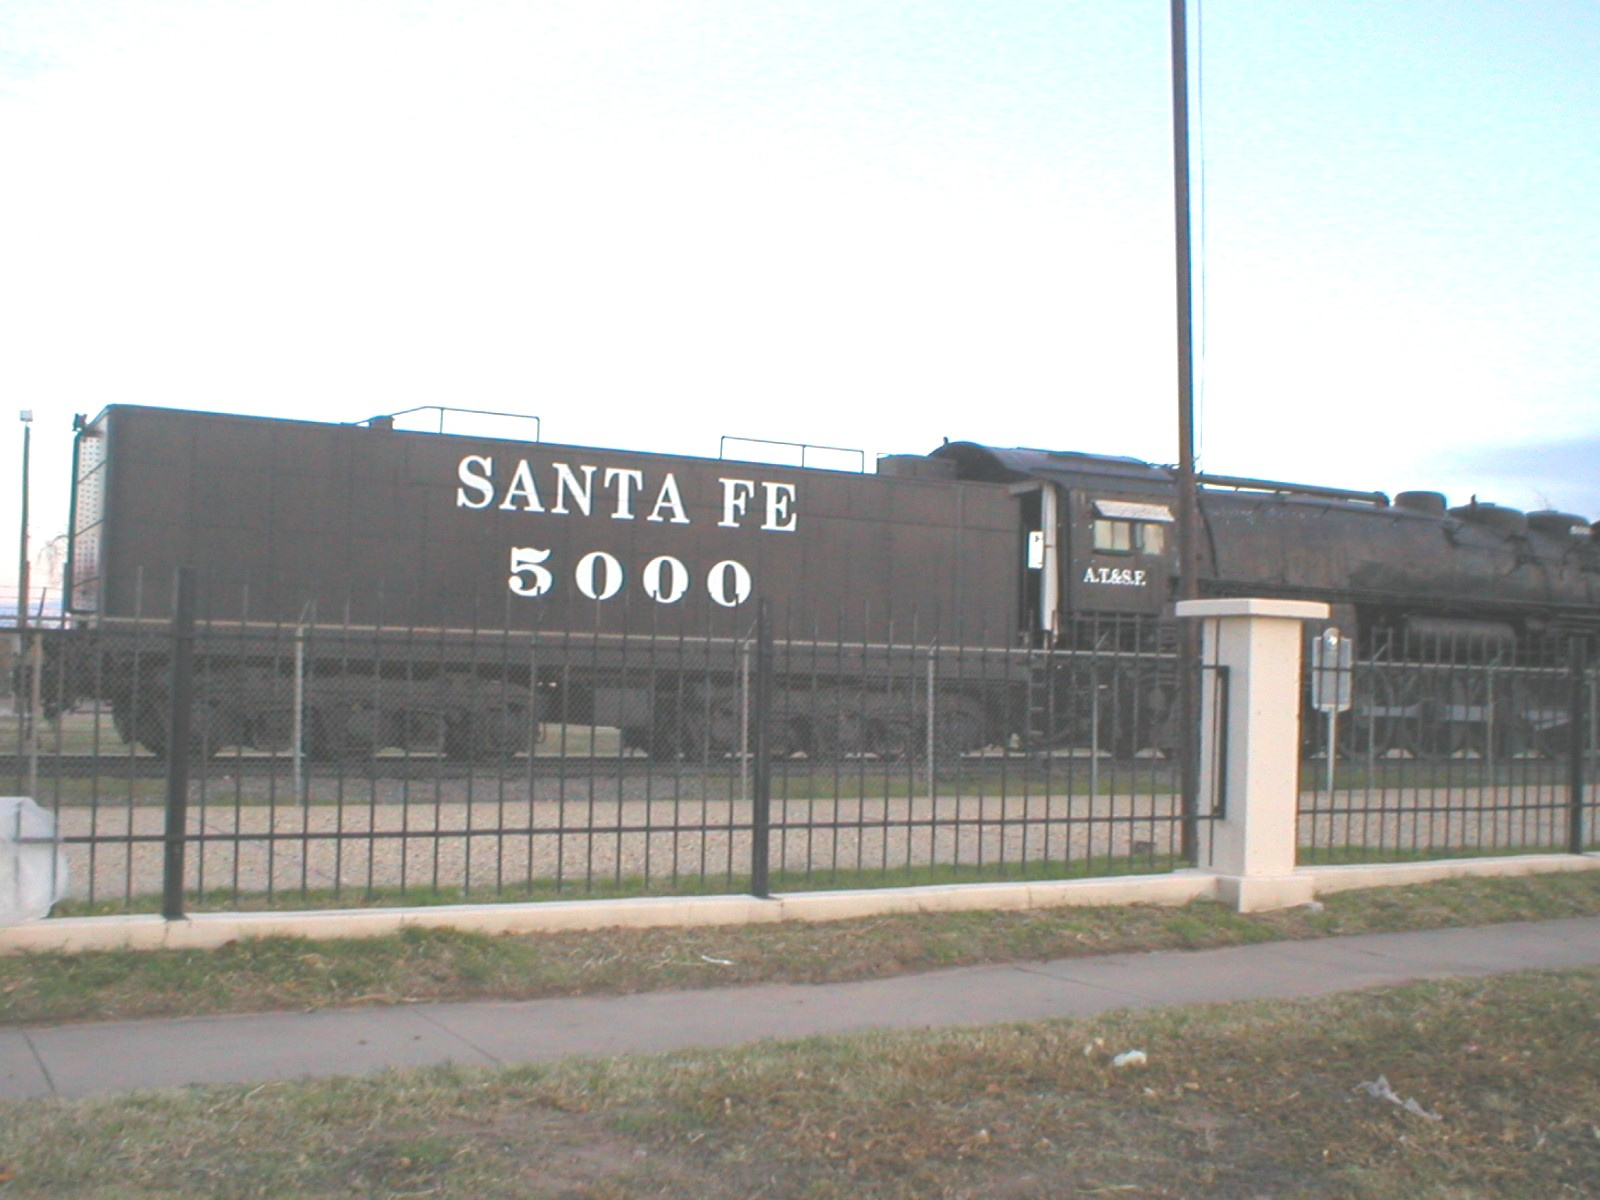 Santa fe express